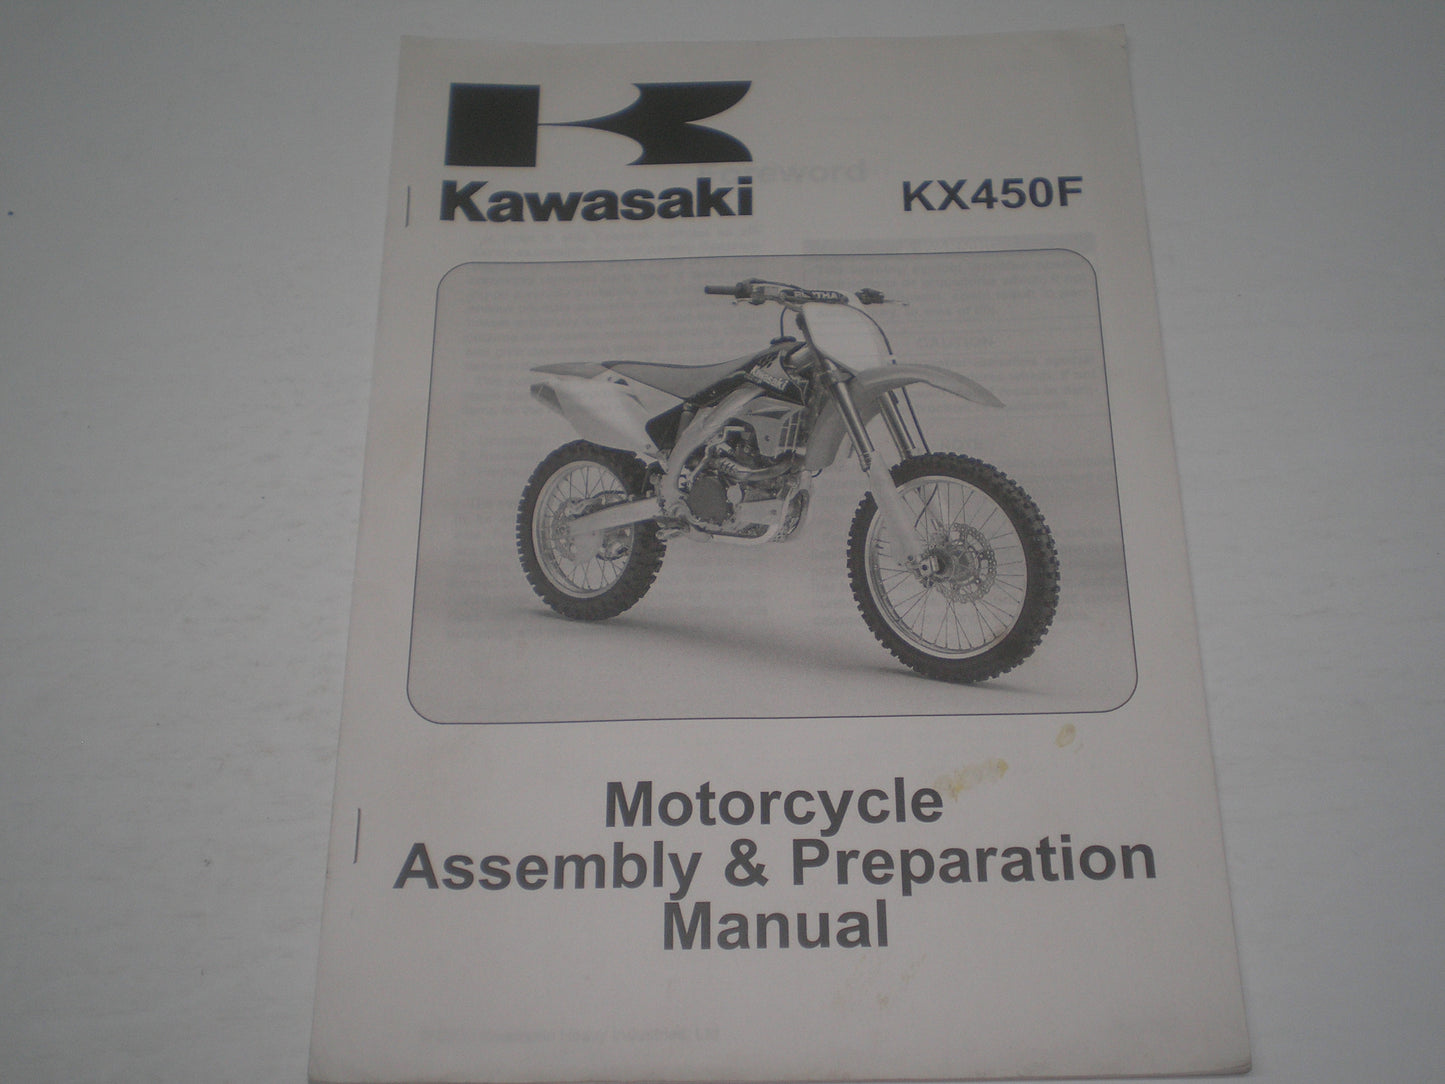 KAWASAKI KX450F / KX450 D6F  2006  Assembly & Preparation Manual  99931-1456-01  #1873